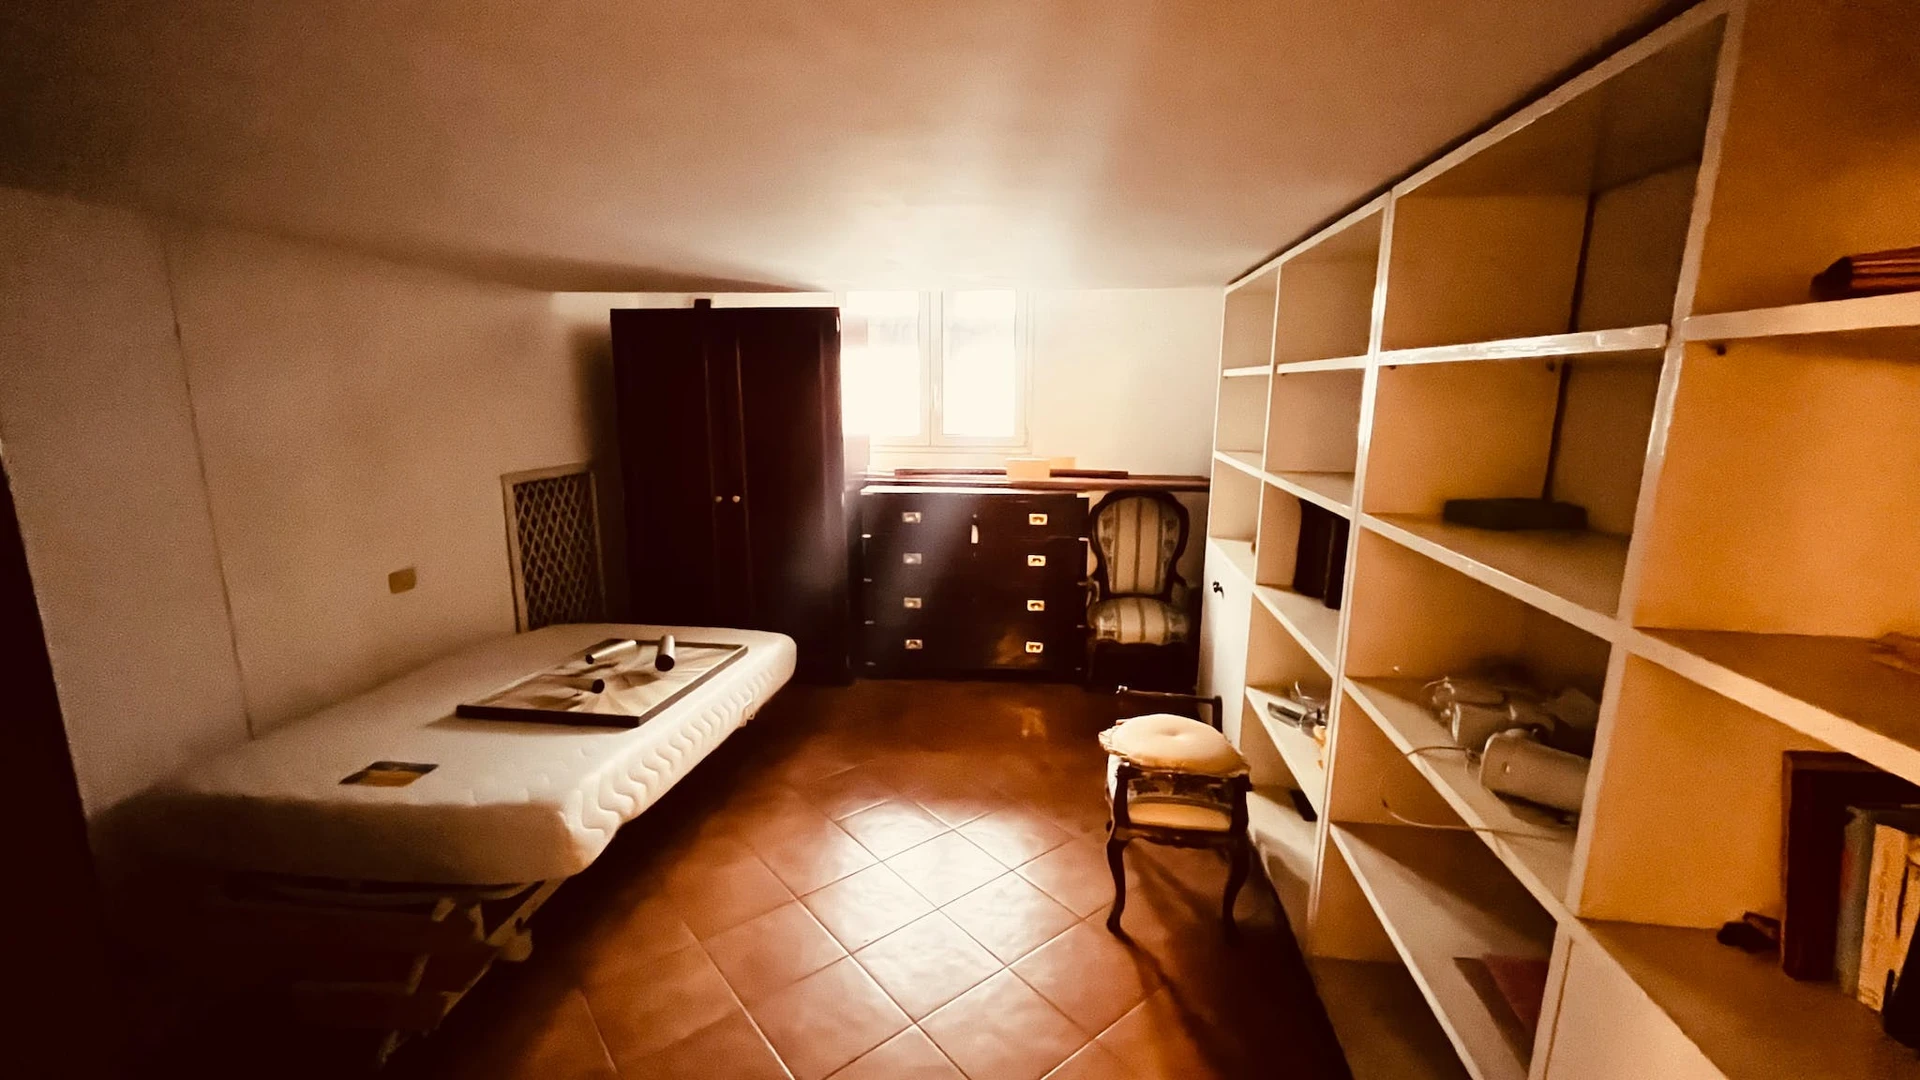 Gemeinsames Zimmer mit einem anderen Studierenden in Rom